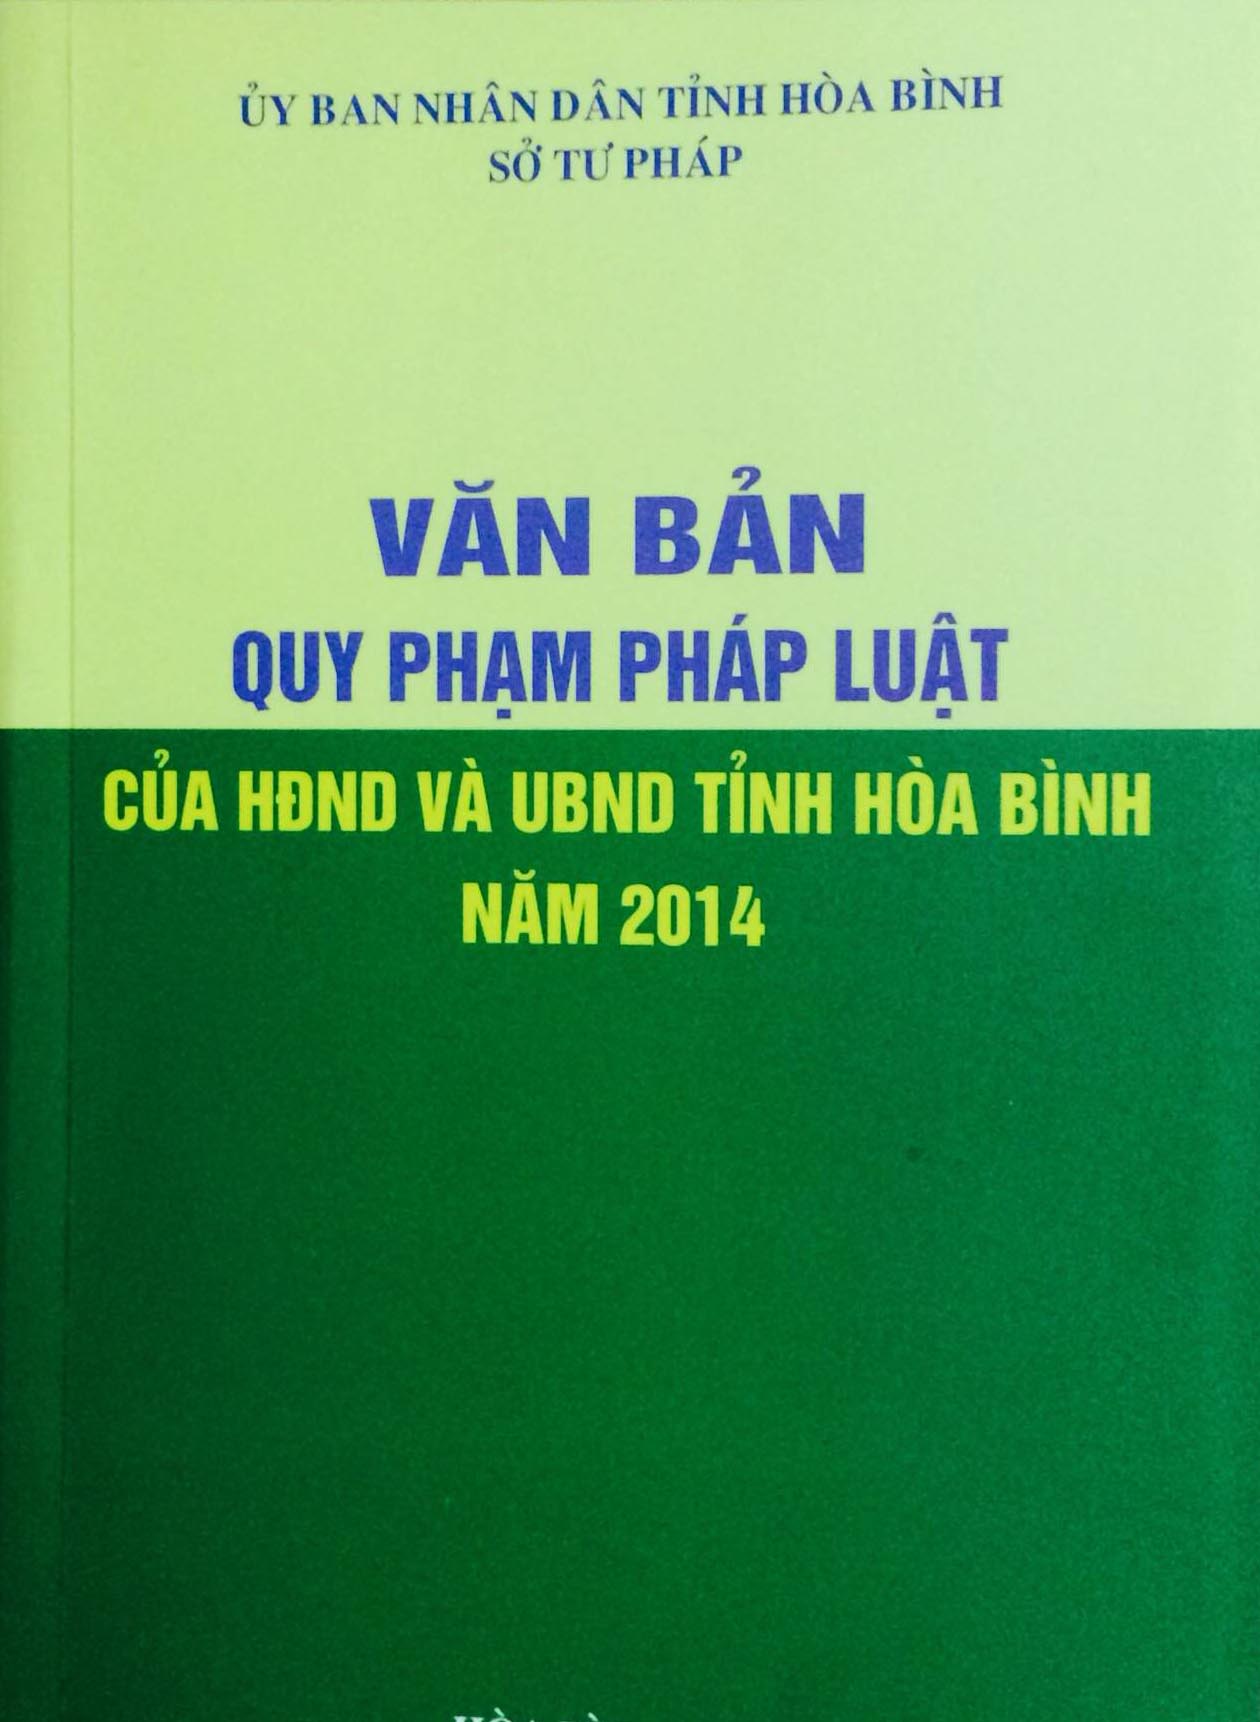 Xuất bản và phát hành cuốn sách “Văn bản QPPL của HĐND và UBND tỉnh Hòa Bình năm 2014” đến cơ sở